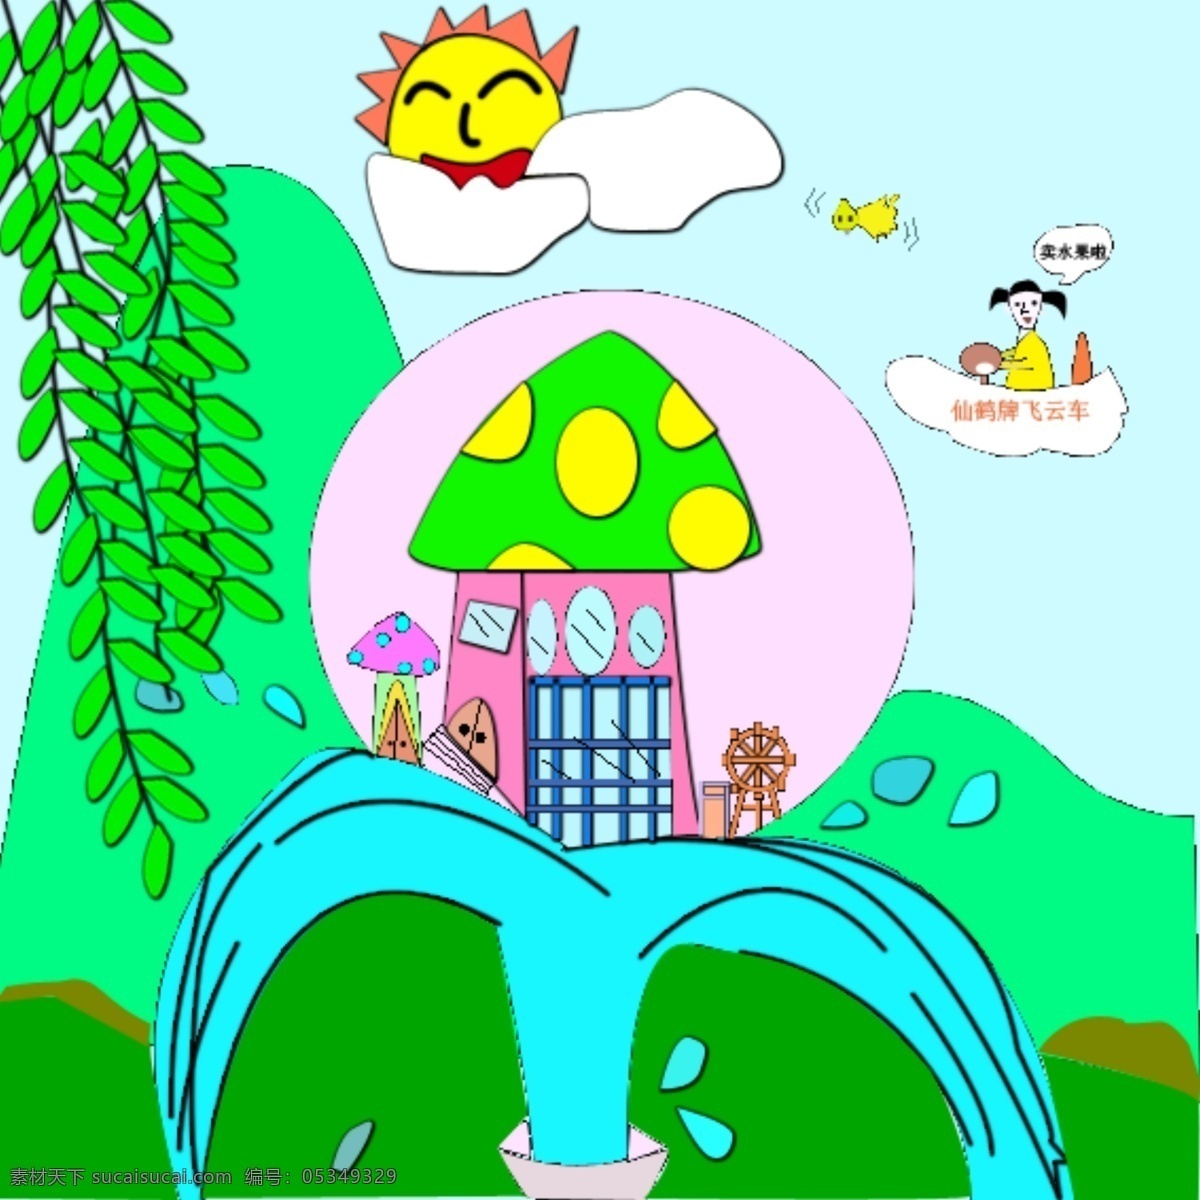 卡通图画 人物风景 喷泉 柳树 蓝天白云 太阳高山 蘑菇房 小女孩 行走的cd 动漫动画 风景漫画